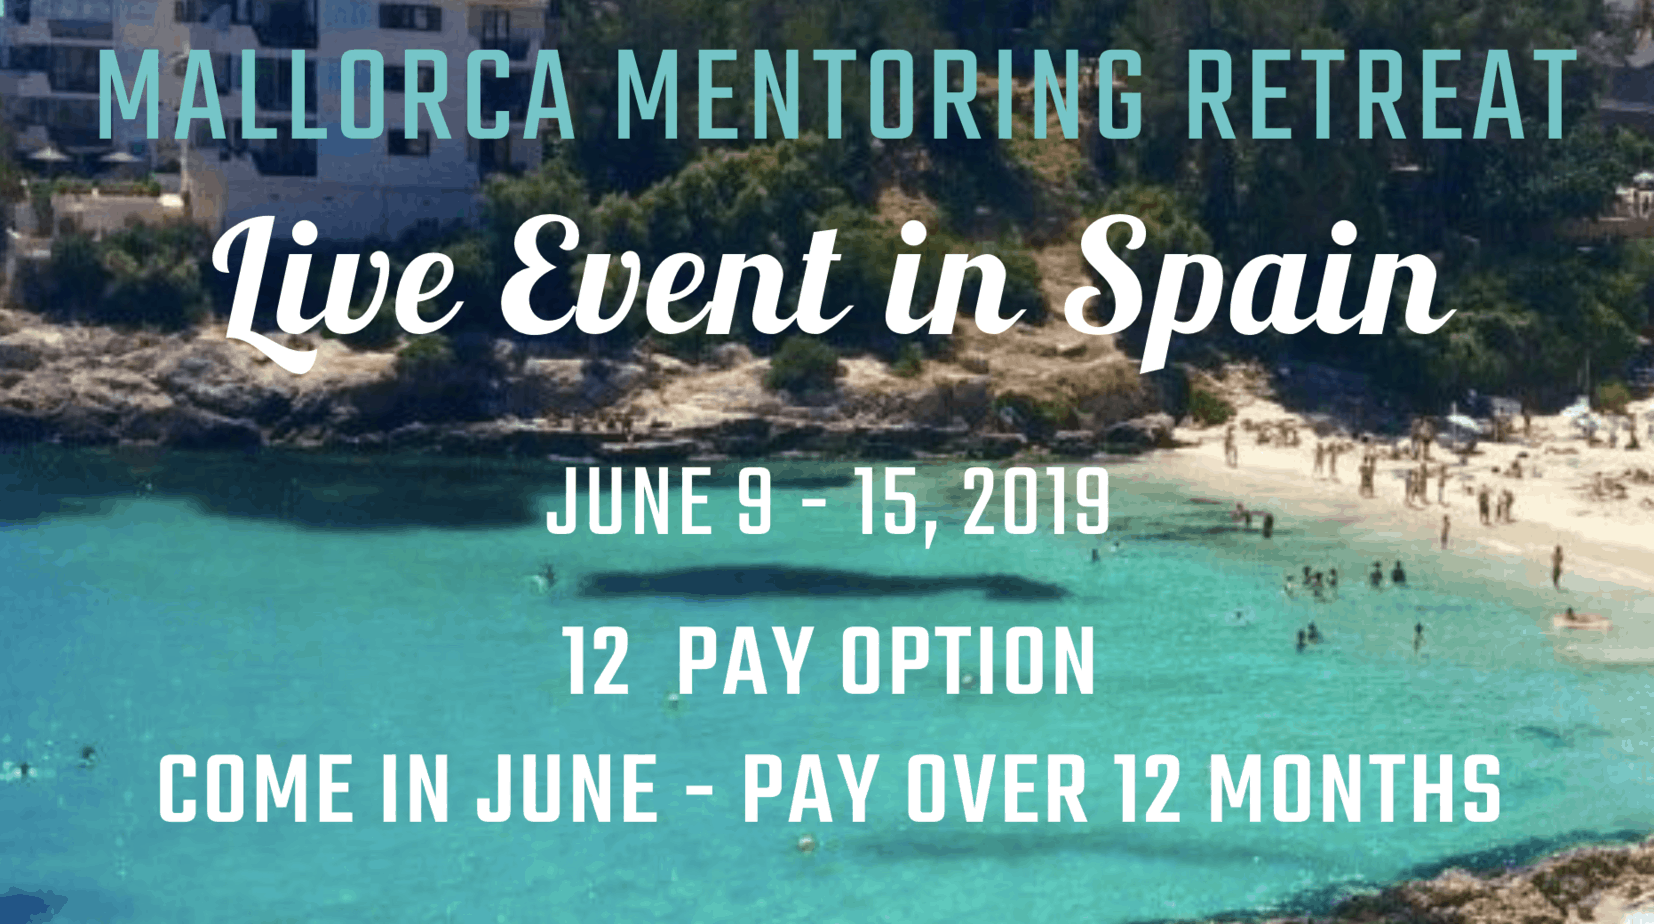 Zazzle Mentoring Retreat Event Mallorca Spain June 2019 12 Payment Plan